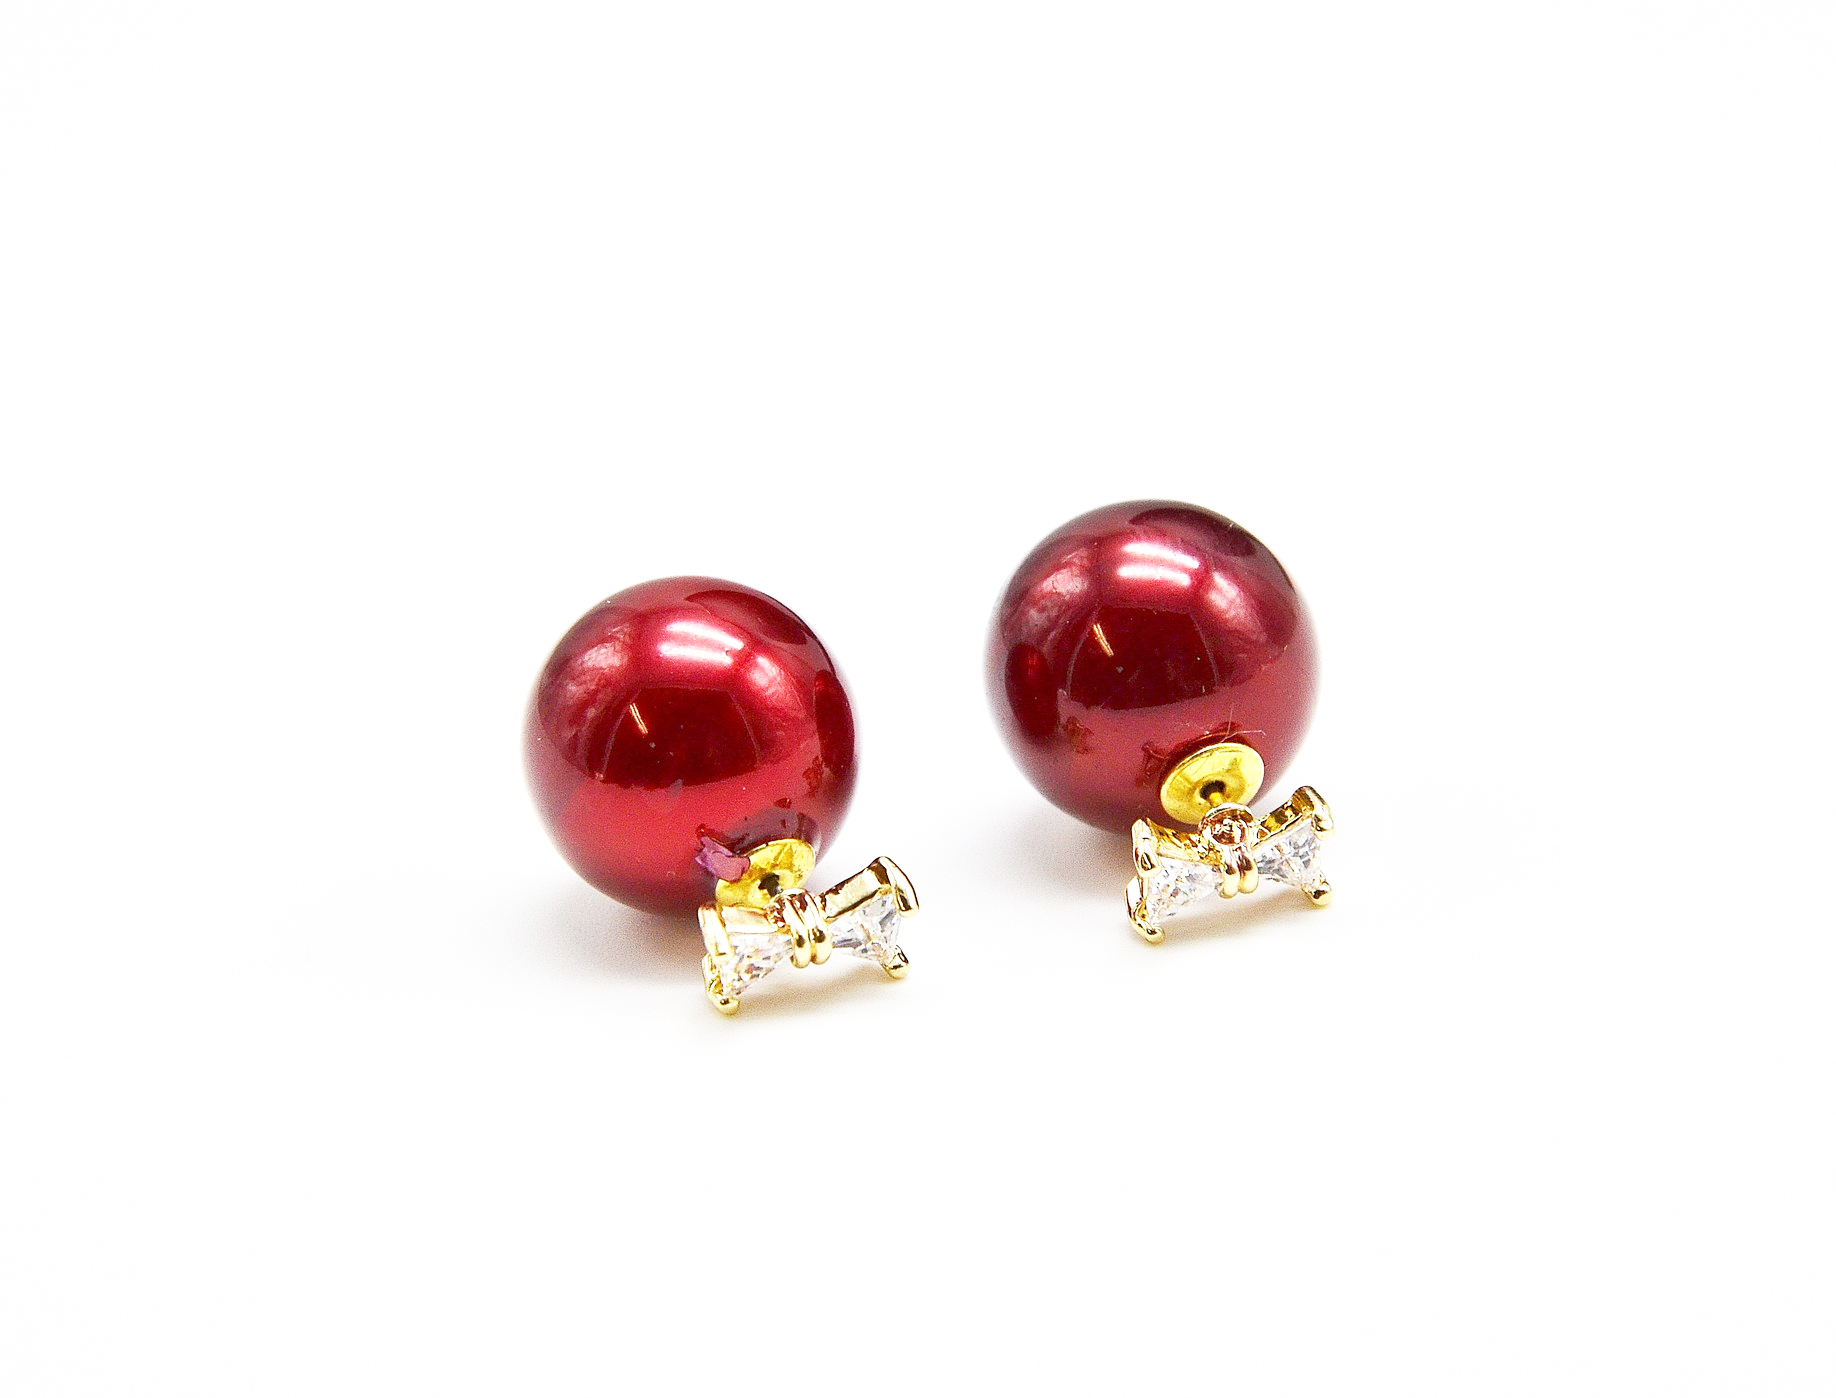 BO229 - Boucles d'Oreilles Double Perles - Noeud Zirconium et Perle Rouge -  Mode Fantaisie